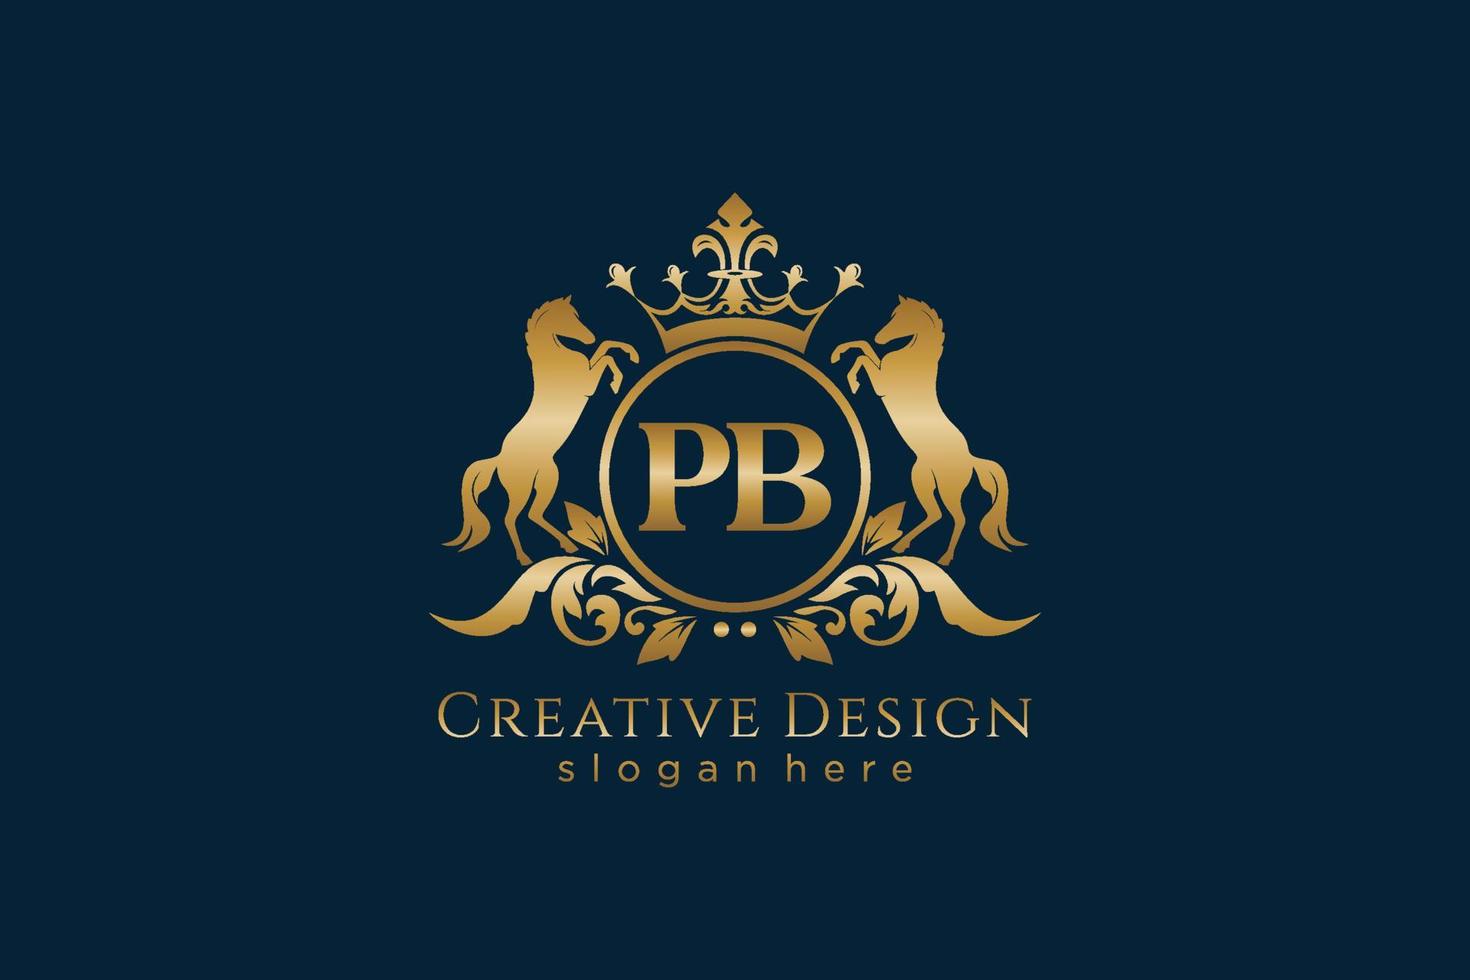 cresta dorada retro pb inicial con círculo y dos caballos, plantilla de insignia con pergaminos y corona real - perfecto para proyectos de marca de lujo vector